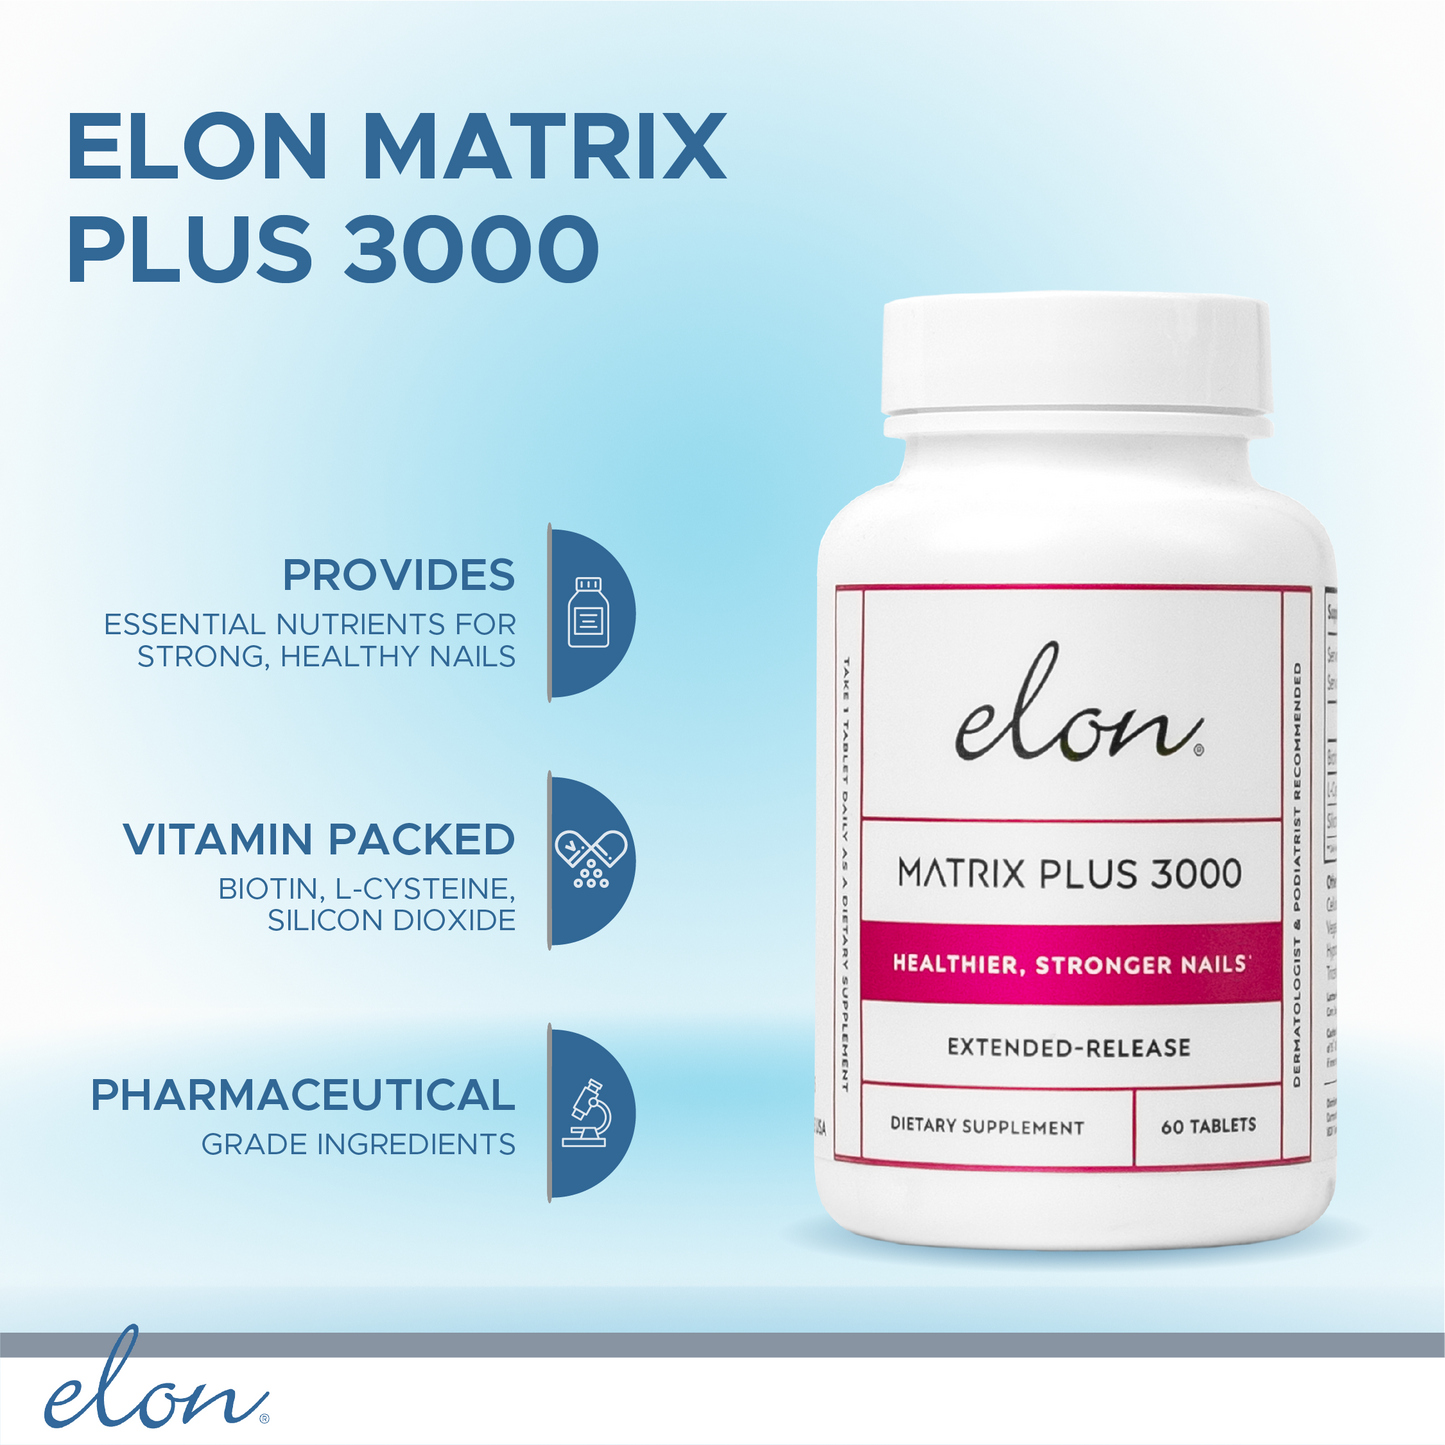 Elon Matrix Plus 3000 for Healthier & Stronger Nails